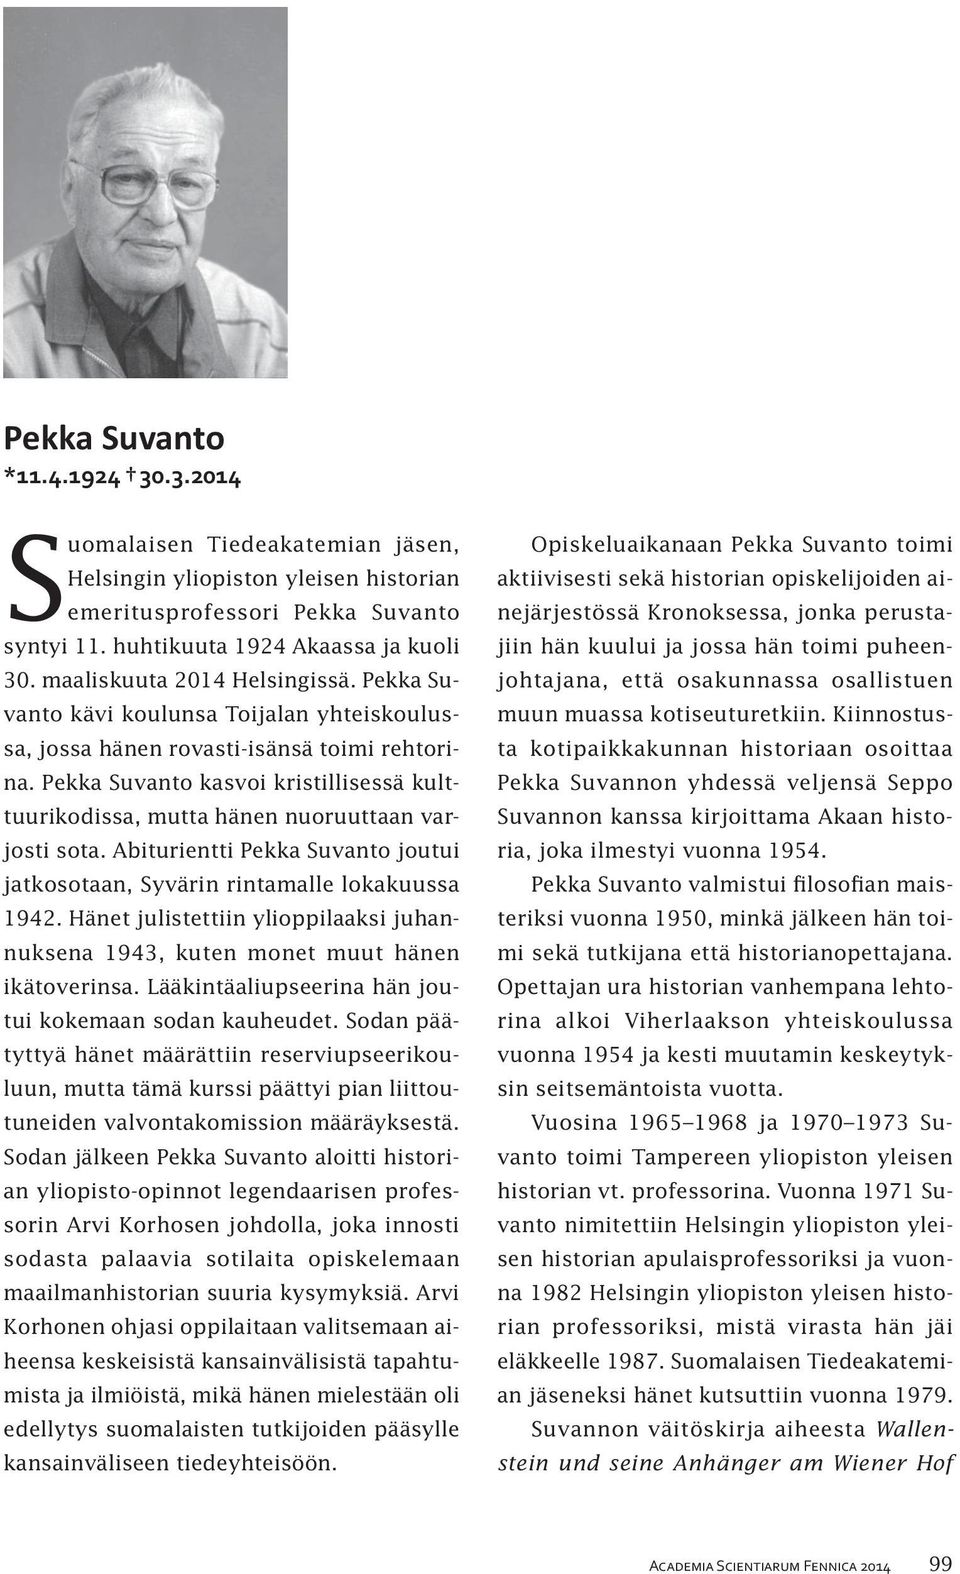 Pekka Suvanto kasvoi kristillisessä kulttuurikodissa, mutta hänen nuoruuttaan varjosti sota. Abiturientti Pekka Suvanto joutui jatkosotaan, Syvärin rintamalle lokakuussa 1942.